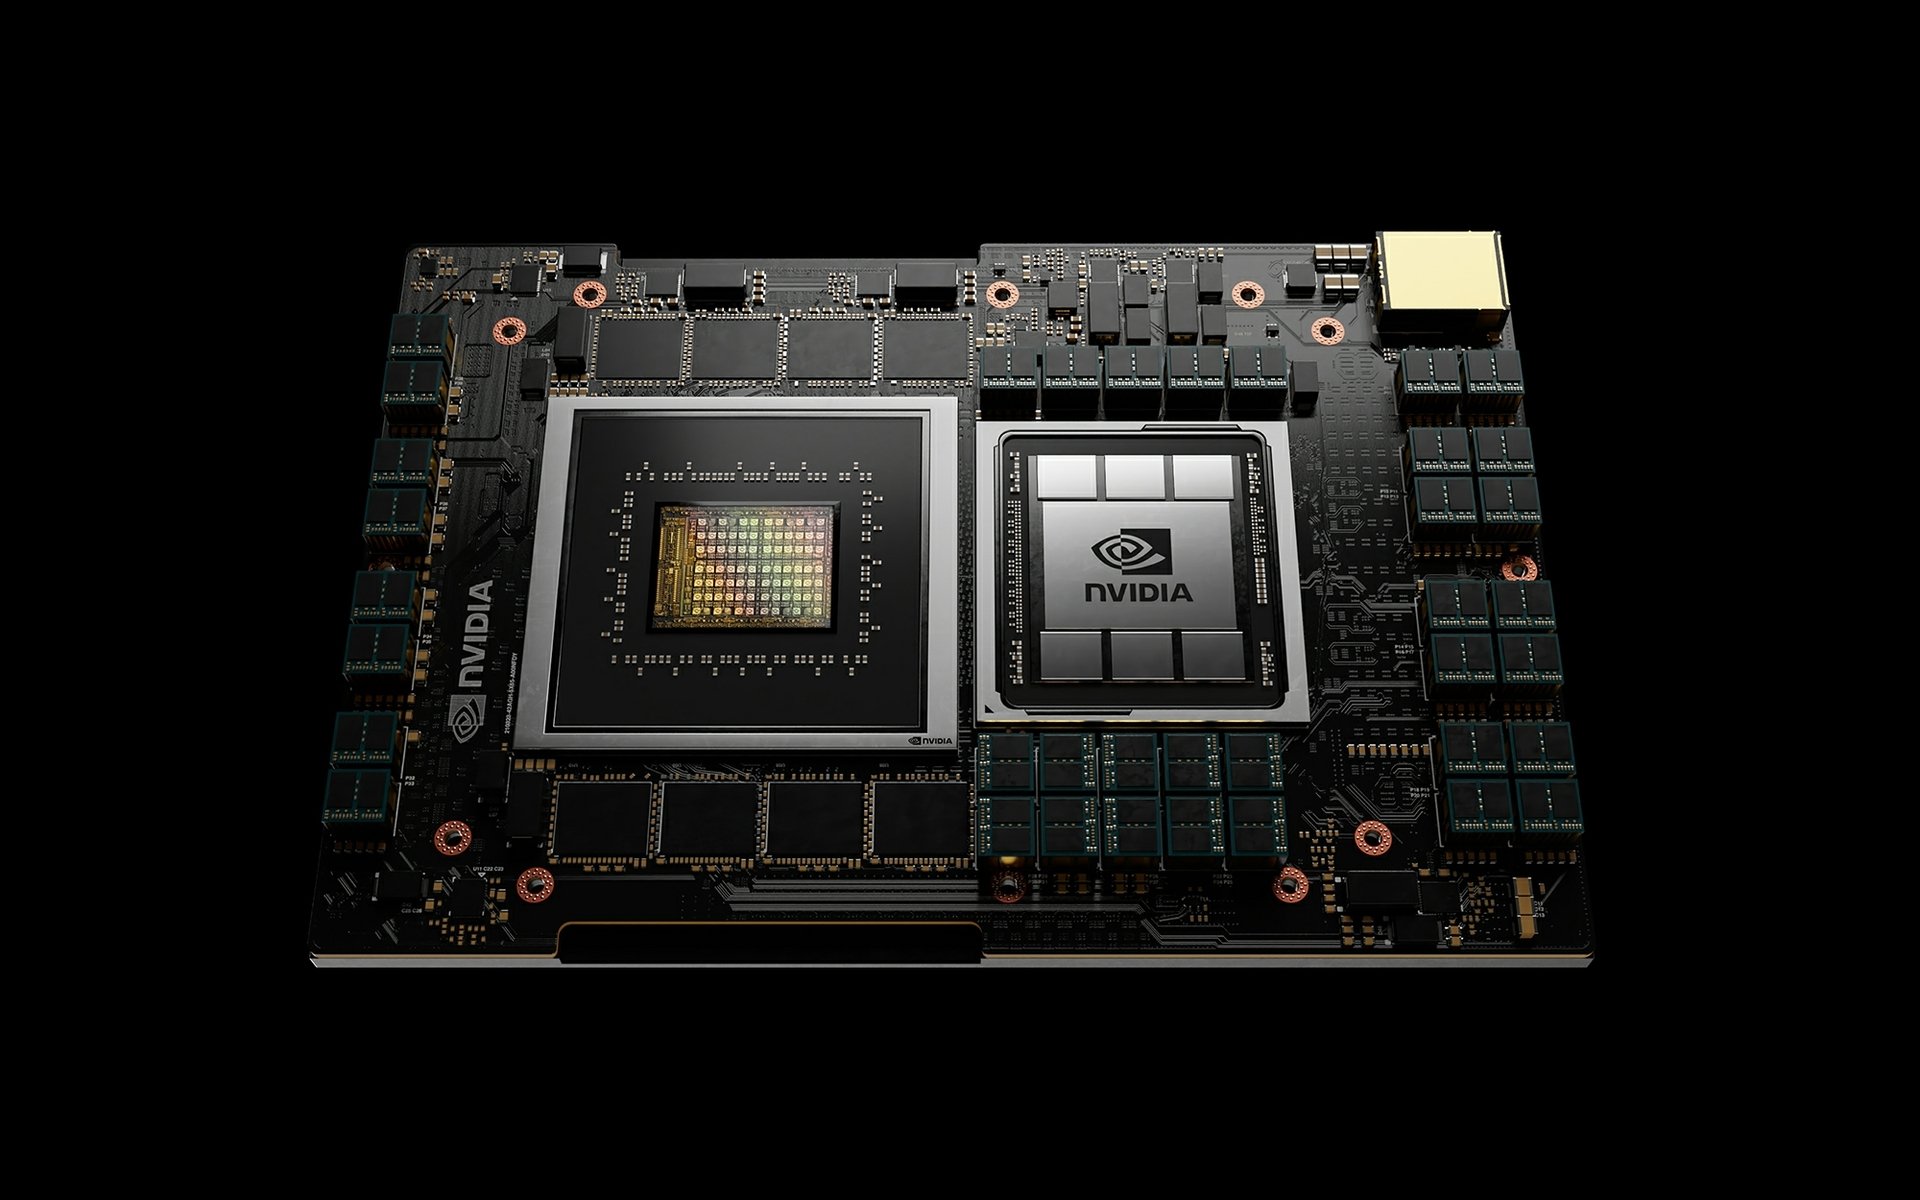 Placa base da Nvidia com chips à mostra